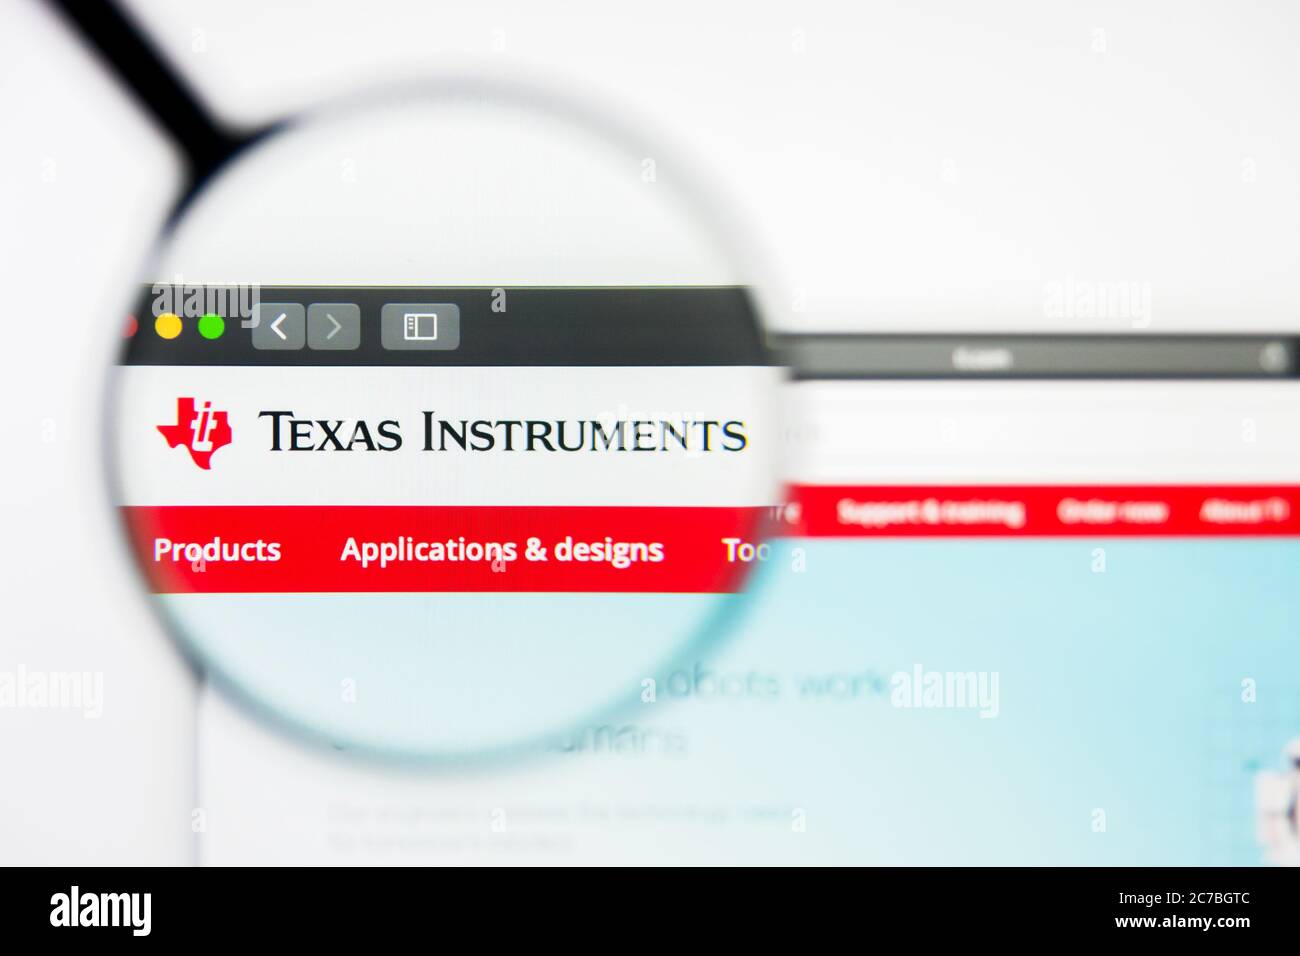 Los Angeles, Kalifornien, USA - 8. April 2019: Illustrative Editorial der Homepage von Texas Instruments. Texas Instruments Logo auf dem Display sichtbar Stockfoto